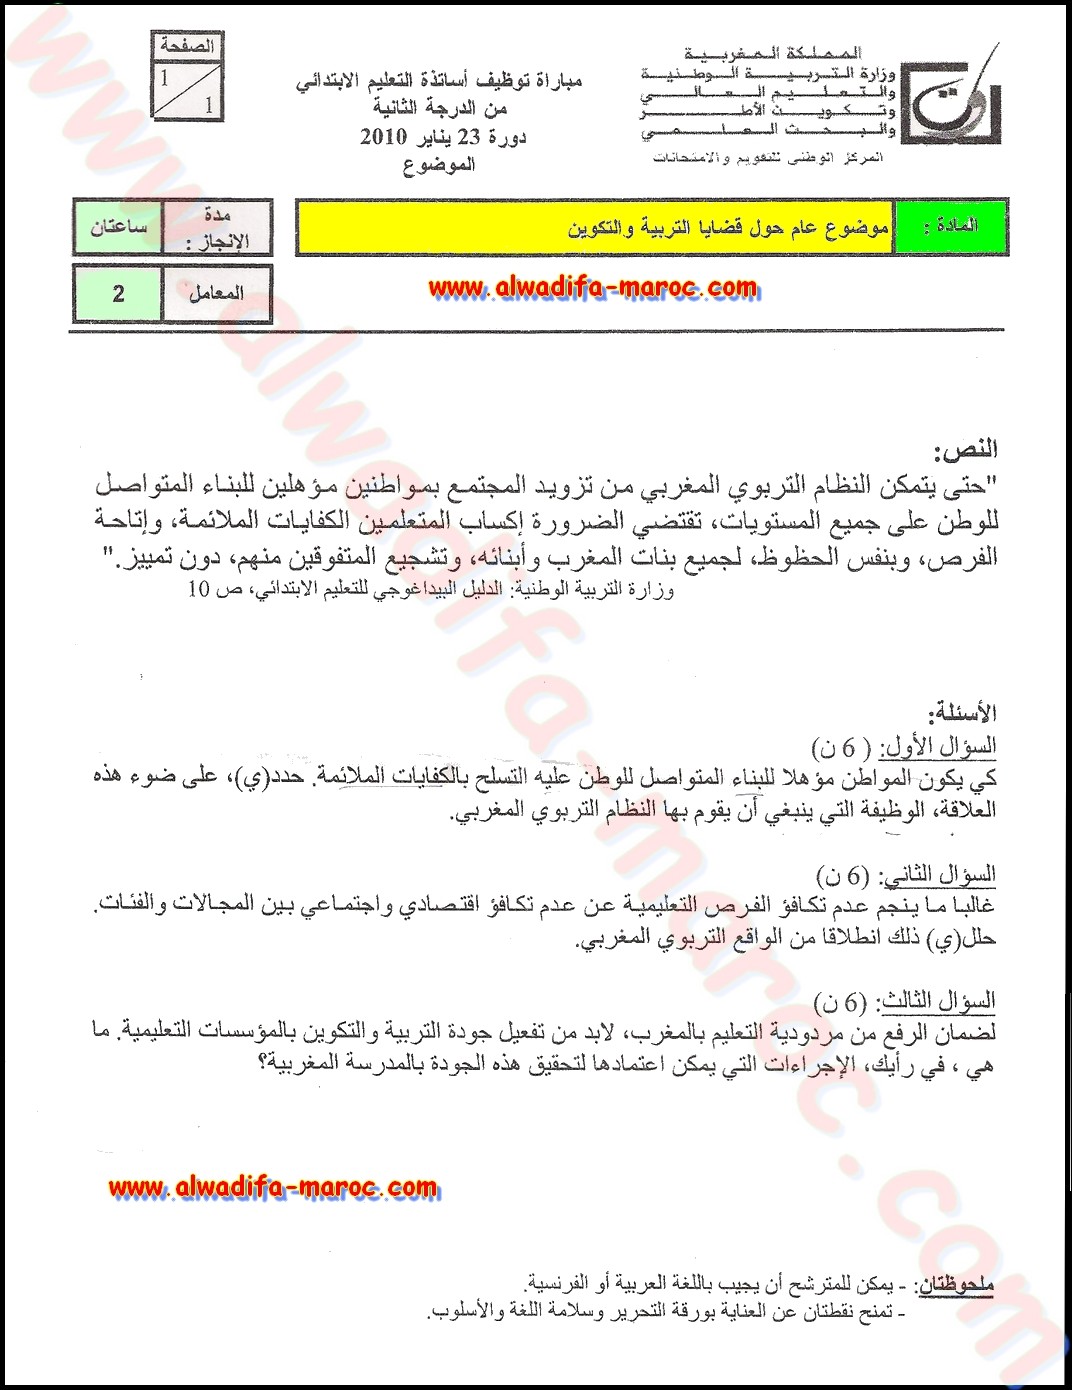 معروض: خطاب طلب وظيفة عربي   انجليزي